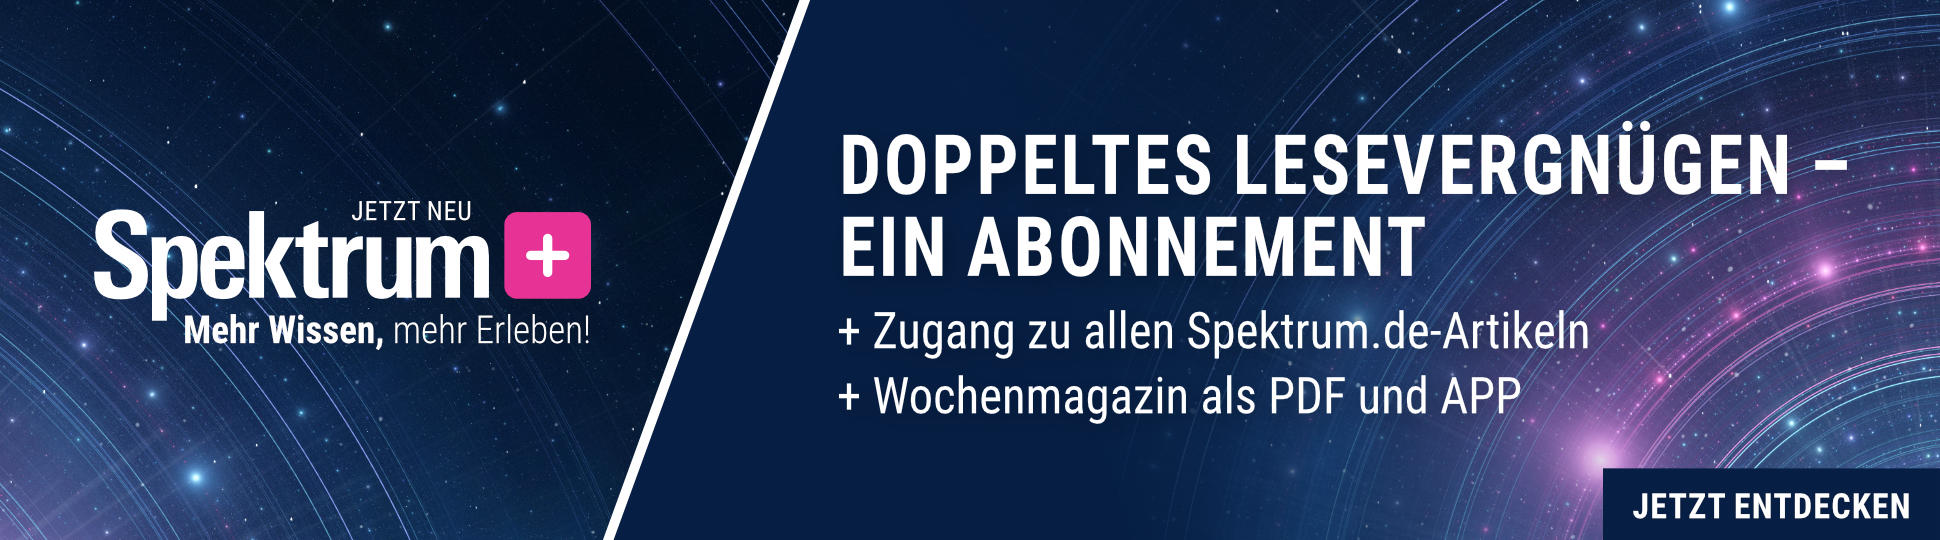 Spektrum+: Doppeltes Lesevergnügen – Ein Abonnement. Im Abo von Spektrum+ enthalten: 1) Zugang zu allen Spektrum.de-Artikeln, 2) Wochenmagazin "Spektrum – Die Woche" als PDF und App. Jetzt informieren.